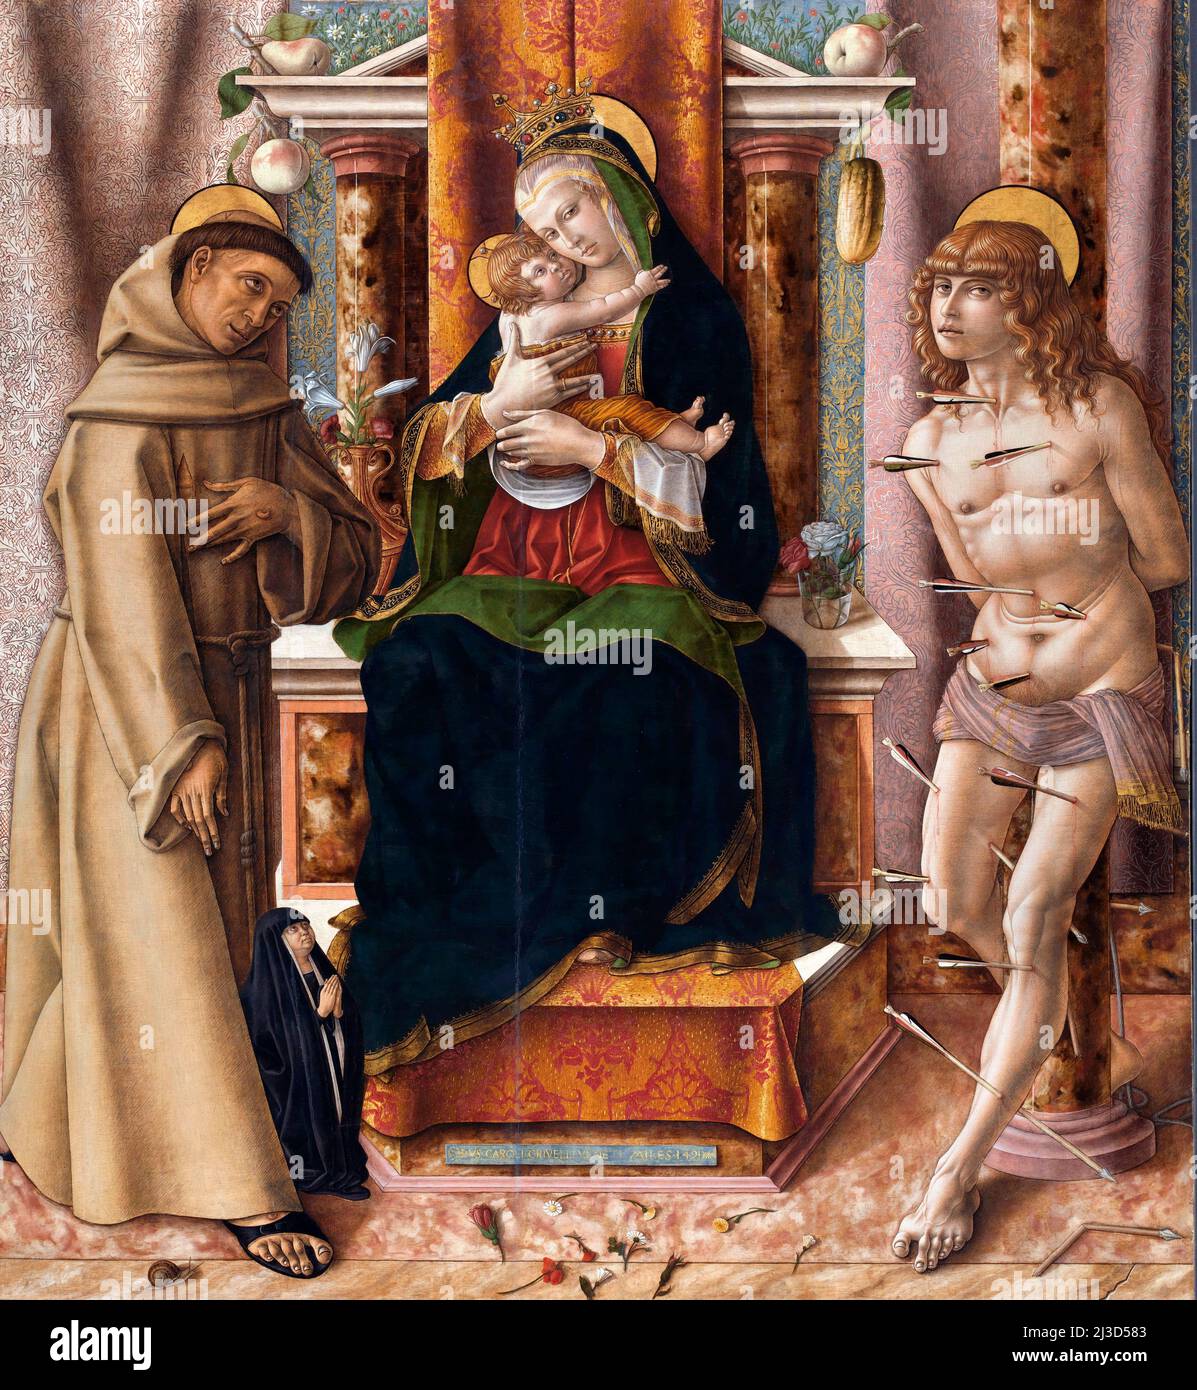 La Vergine col Bambino con i Santi Francesco e Sebastiano di Carlo Crivelli (c.1430-1435 - c.1495), uovo e olio di pioppo, 1491 Foto Stock